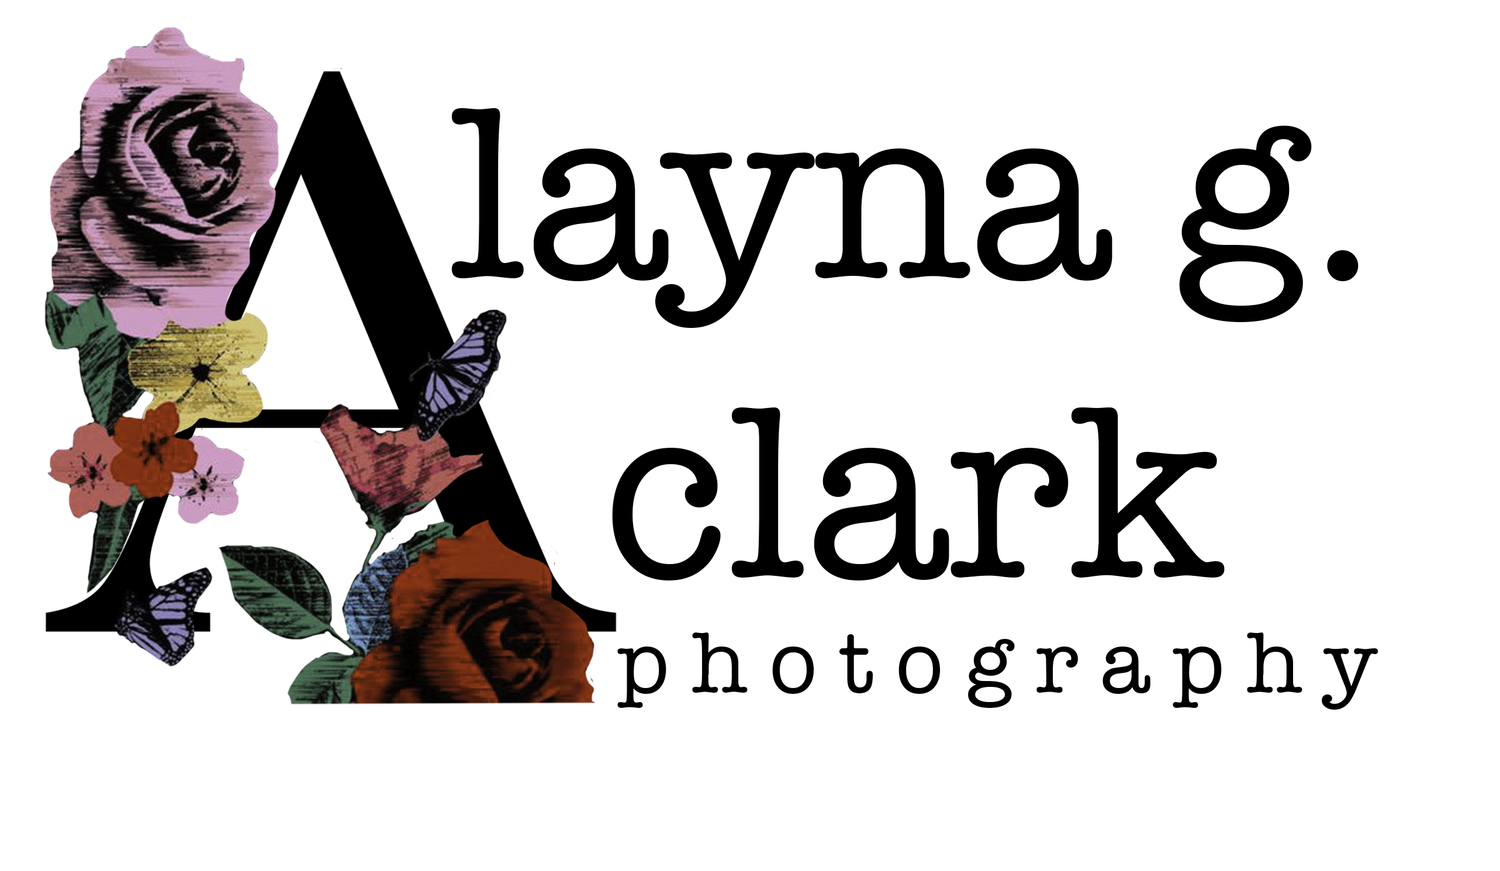 Alayna G. Clark Photography 